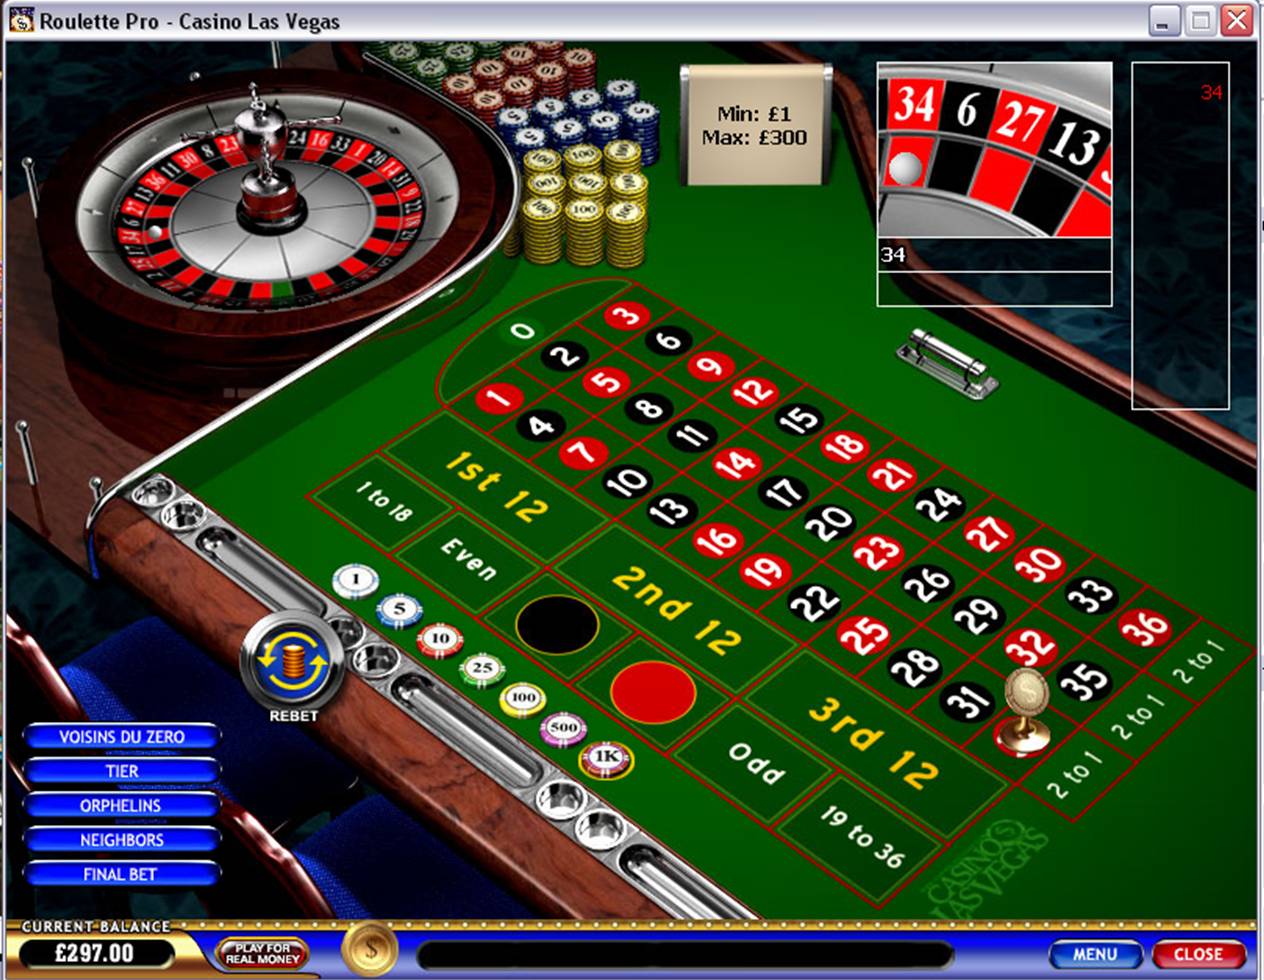 http://roulettebetspro.com/img/casino_lv.jpg